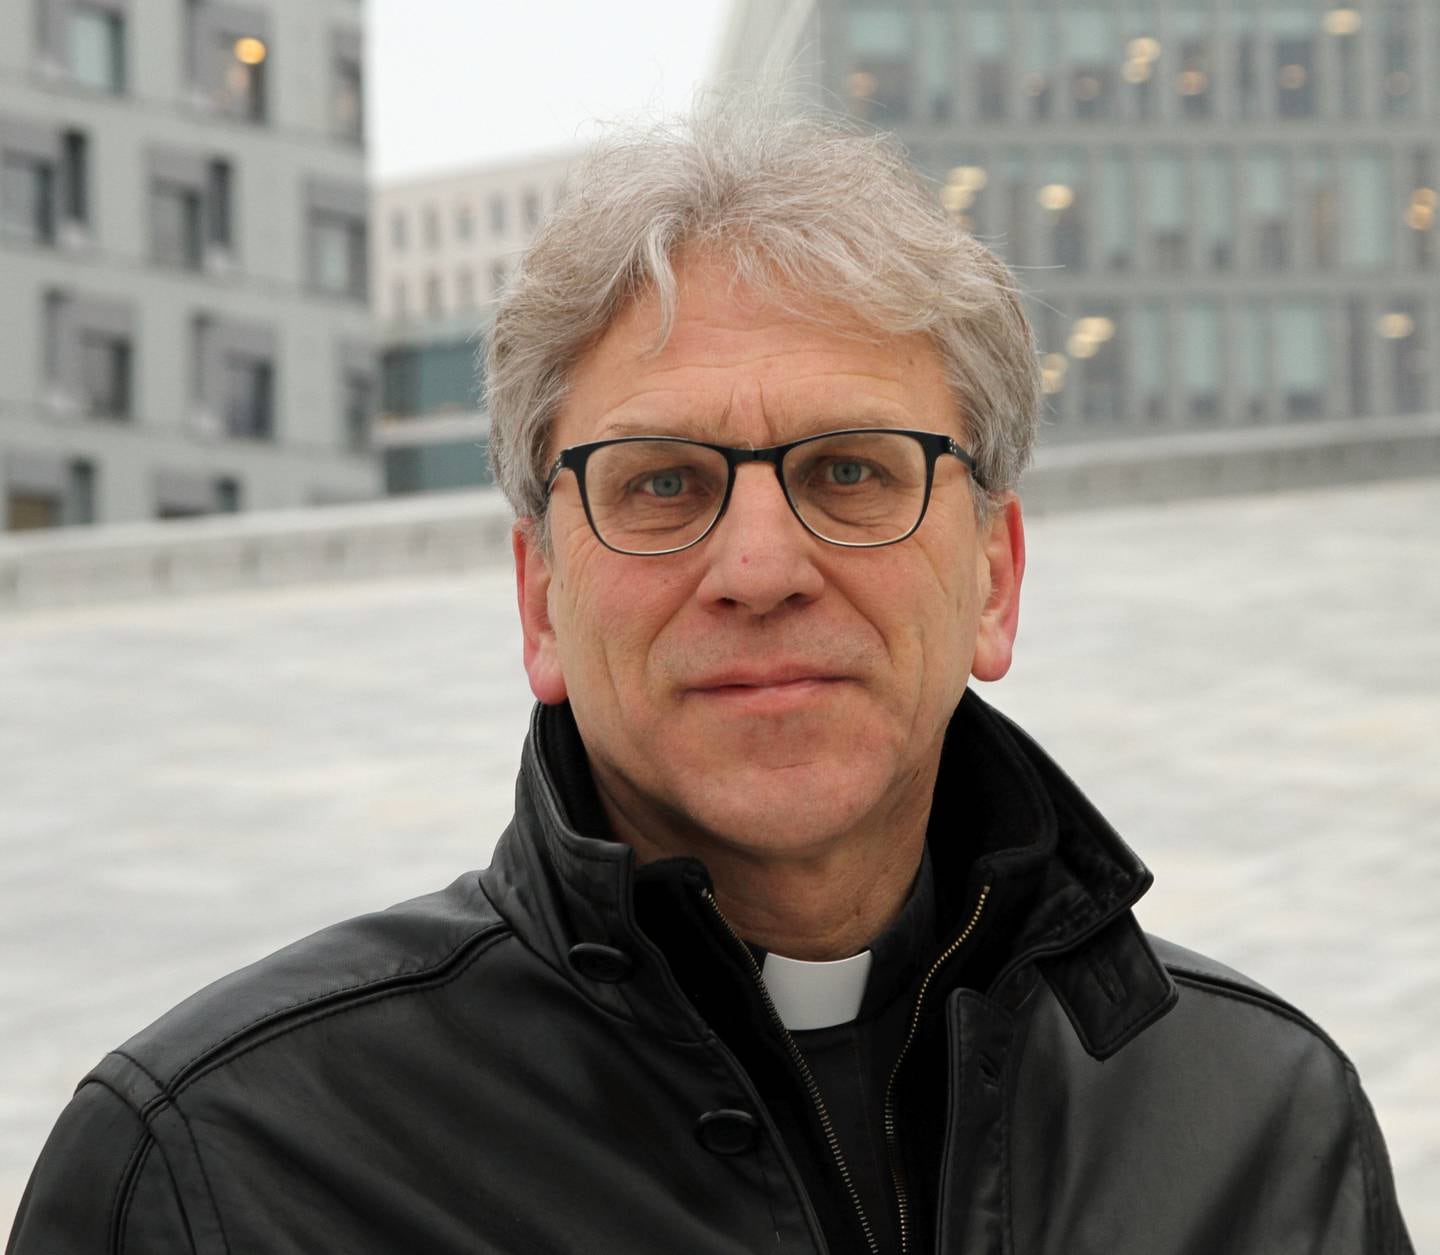 Biskop Olav Fykse Tveit. Foto: Margunn Sundfjord / NPK